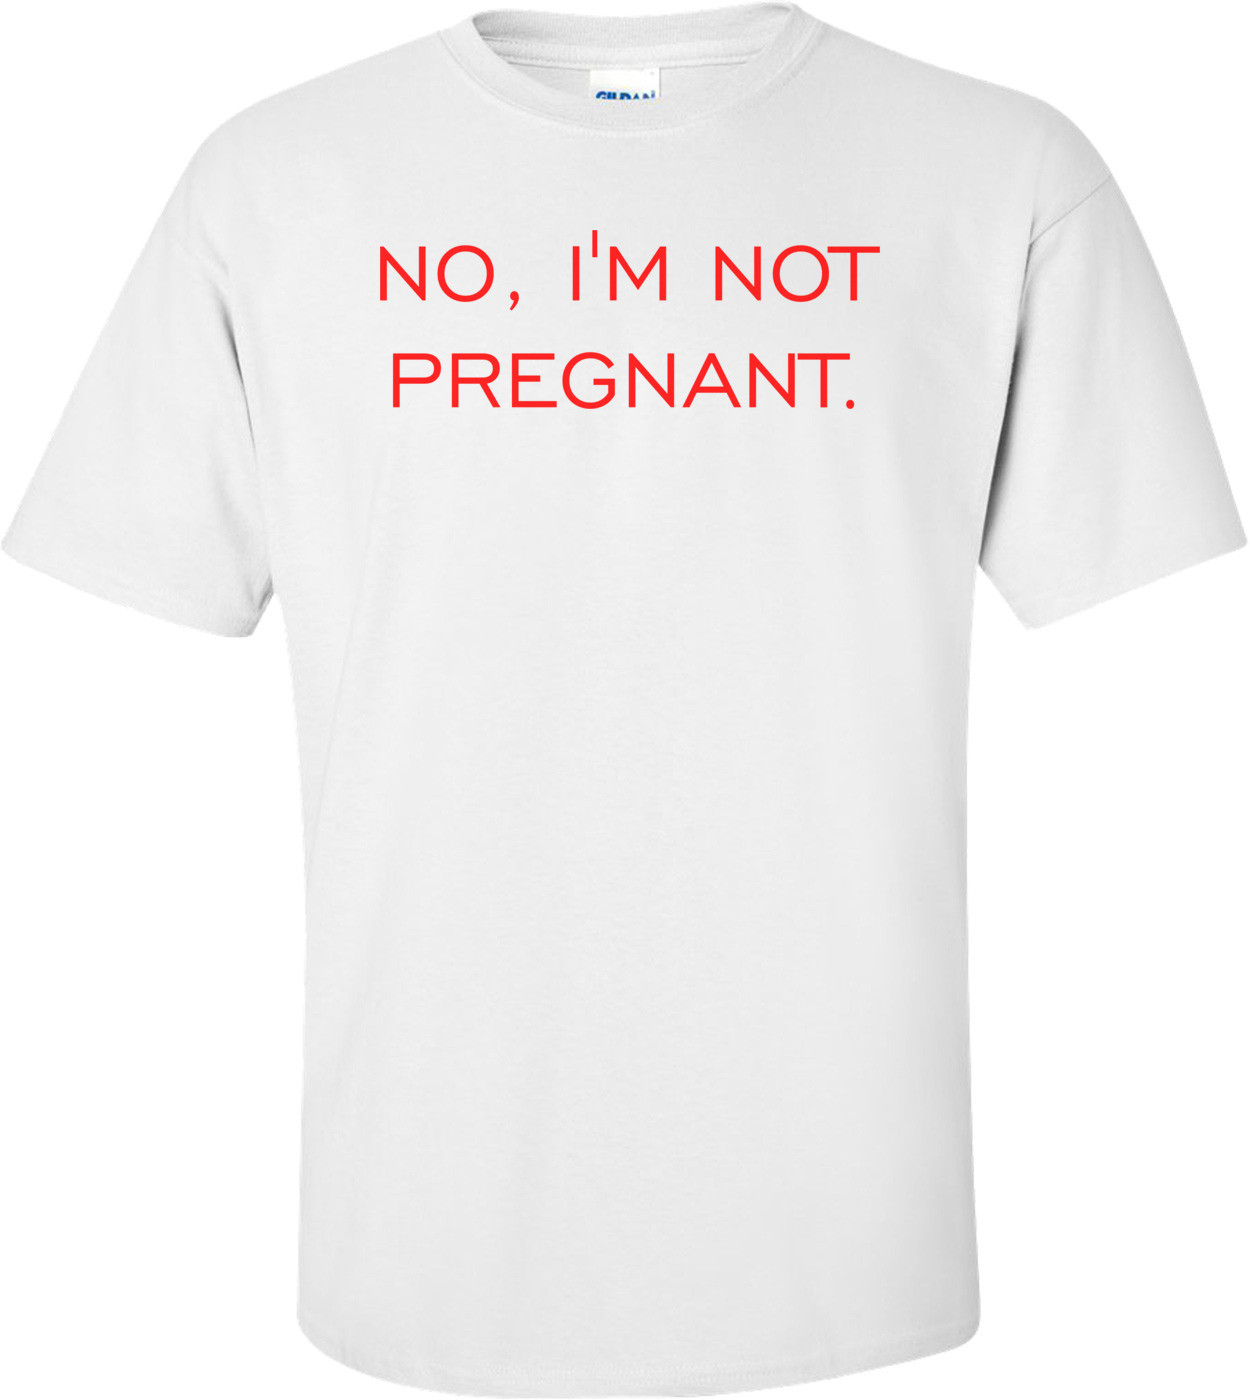 NO, I'M NOT PREGNANT. Shirt